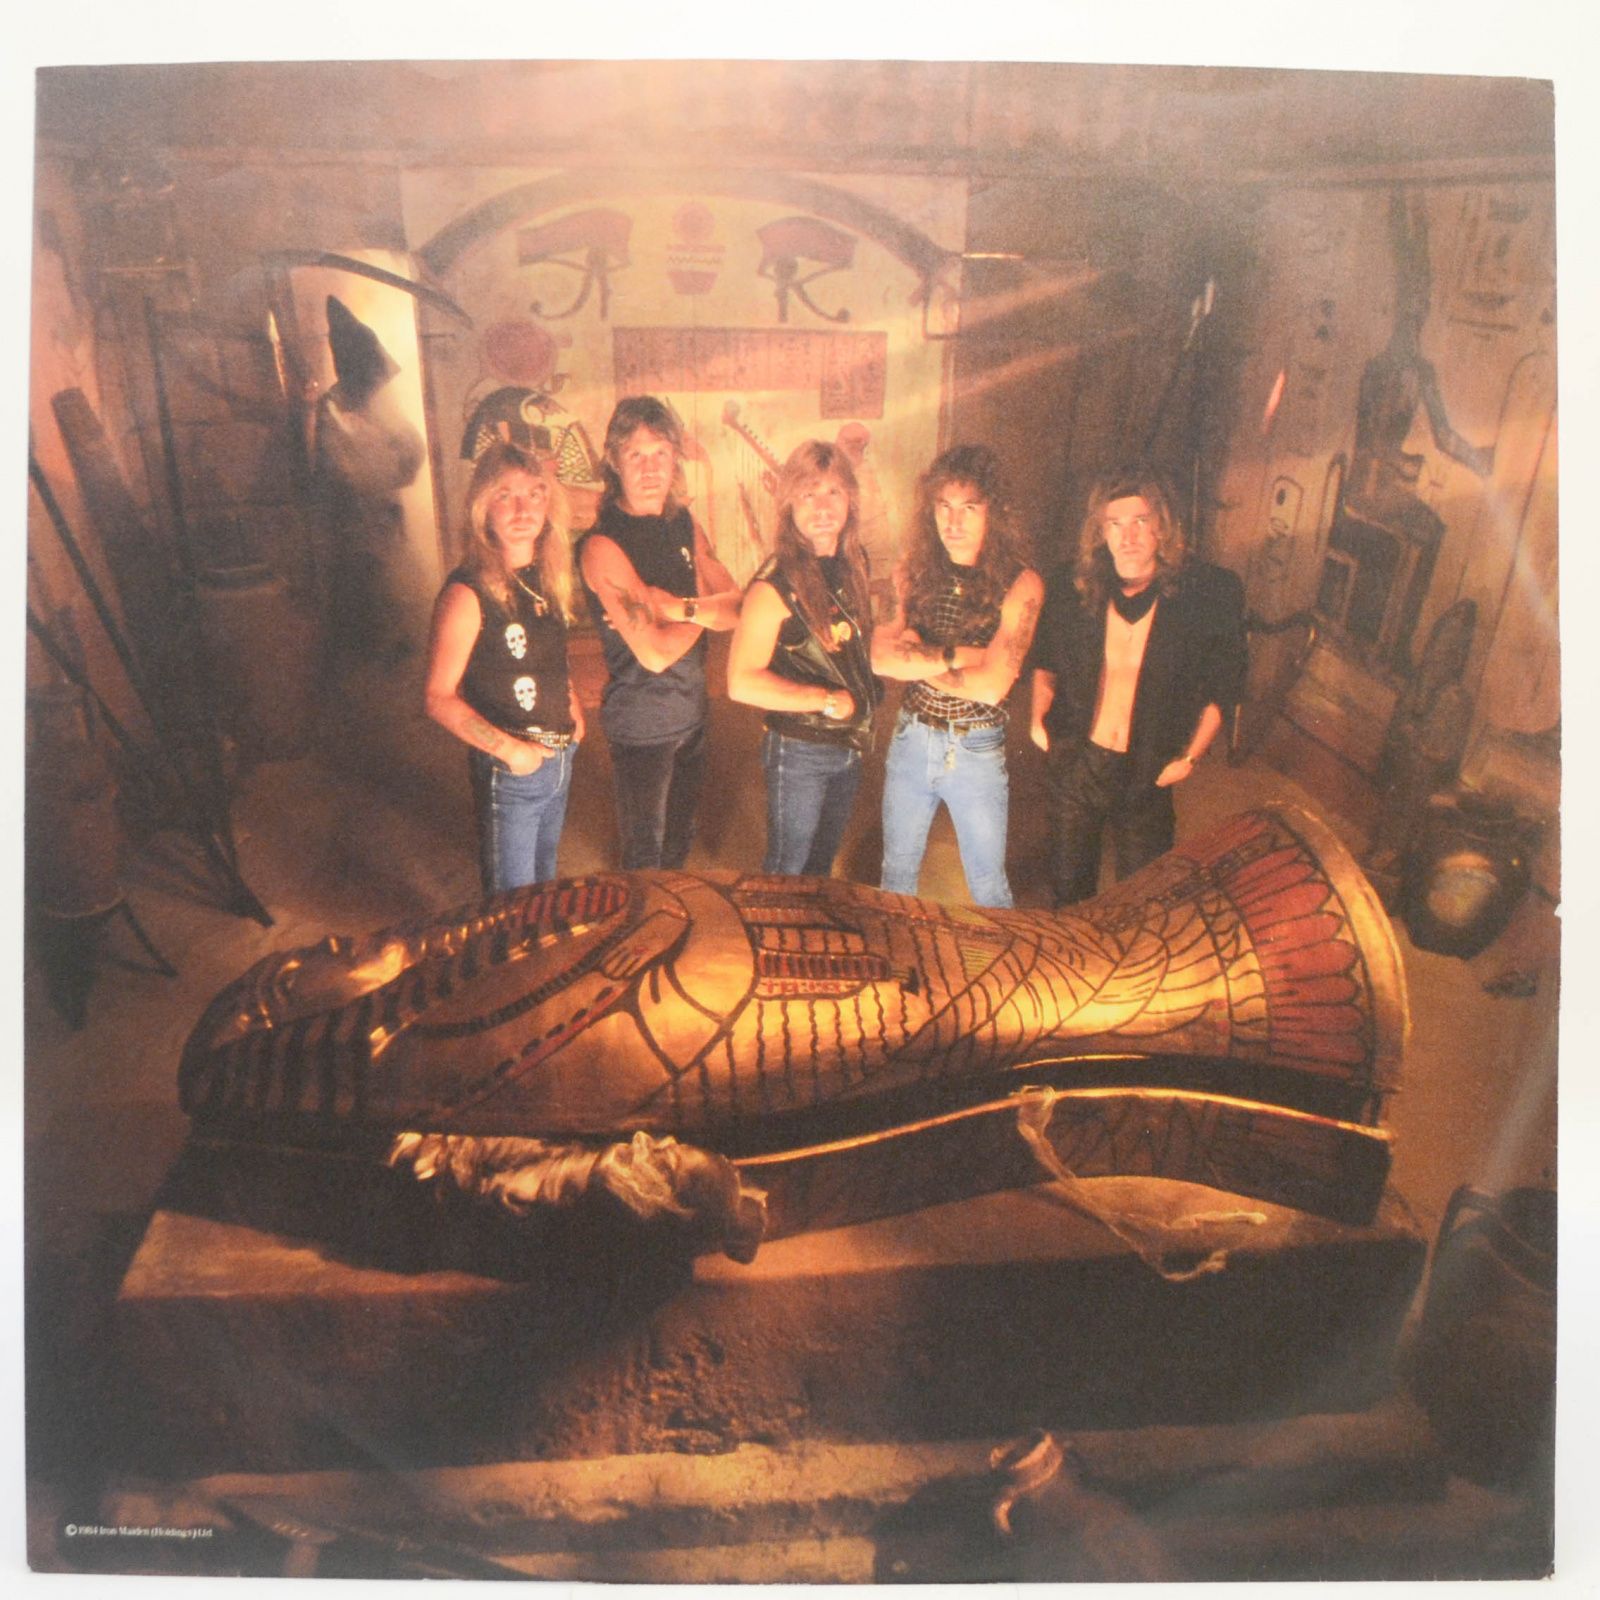 Iron Maiden — Powerslave, 1984